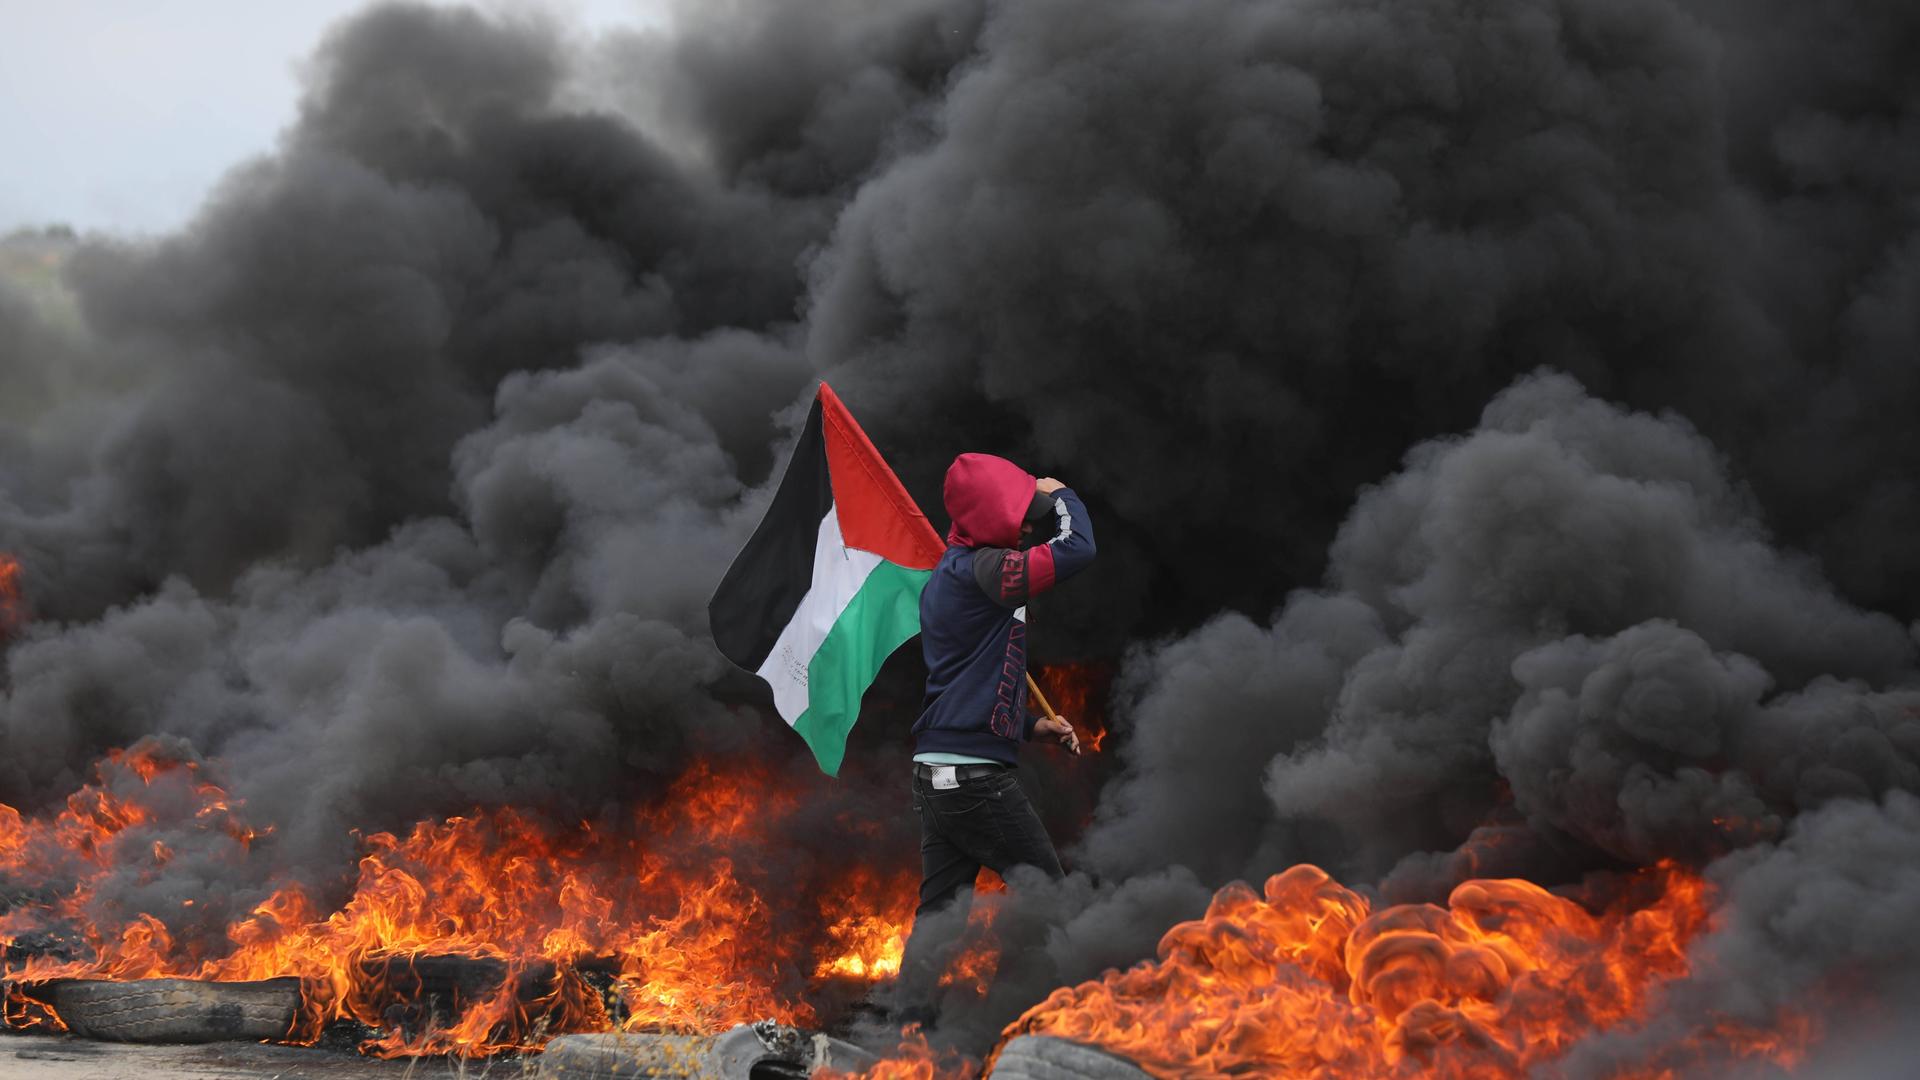 Junge Palästinenser haben aus Protest Autoreifen angezündet, nachdem Israel Luftangriffe auf den Gazastreifen geflogen hat.